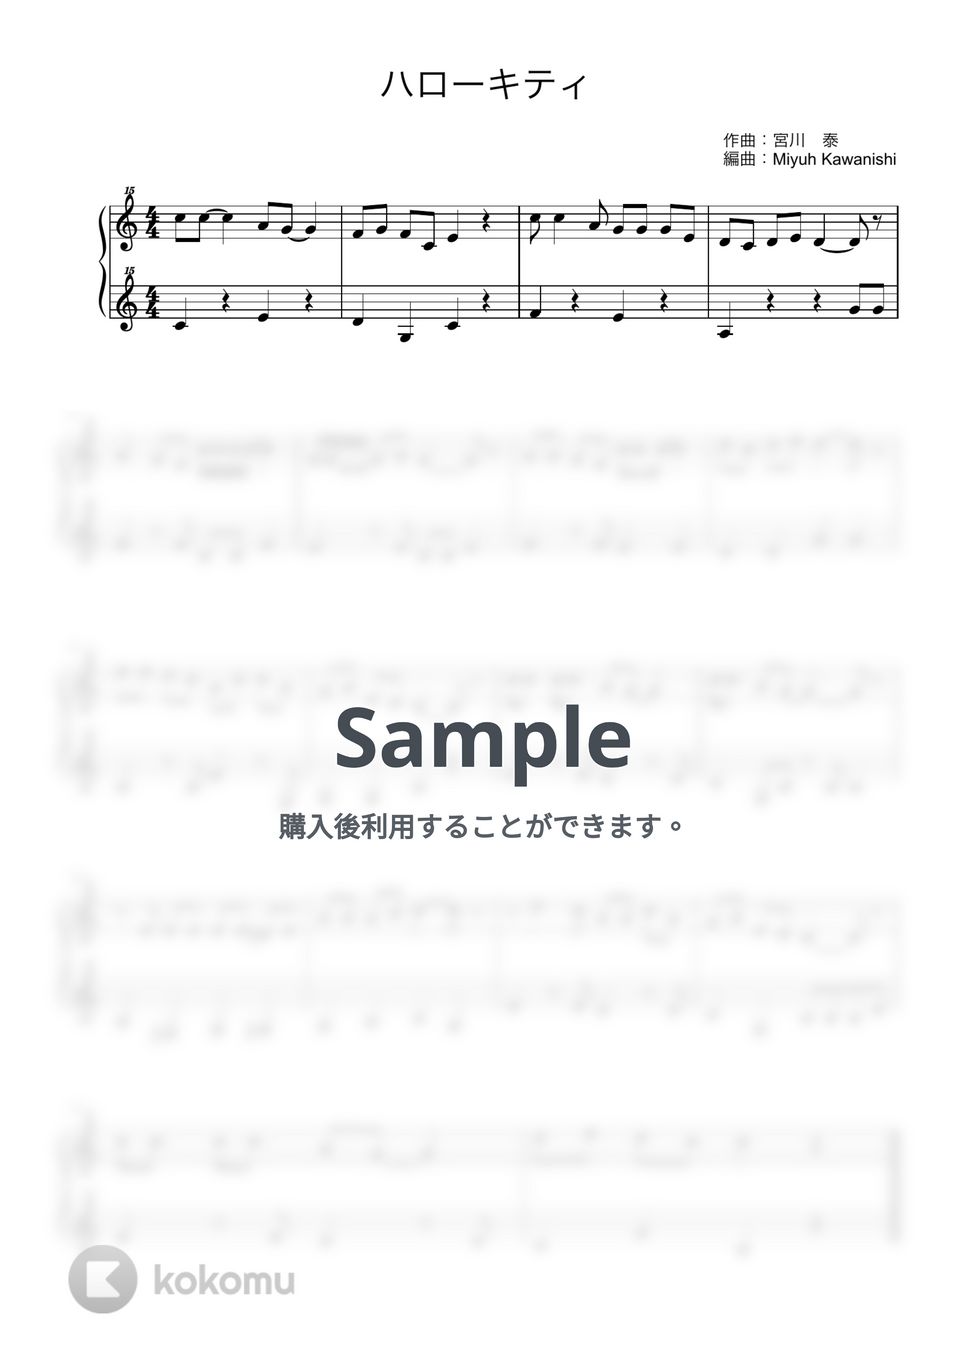 ハローキティ (トイピアノ / 25鍵盤 / 童謡) by 川西 三裕